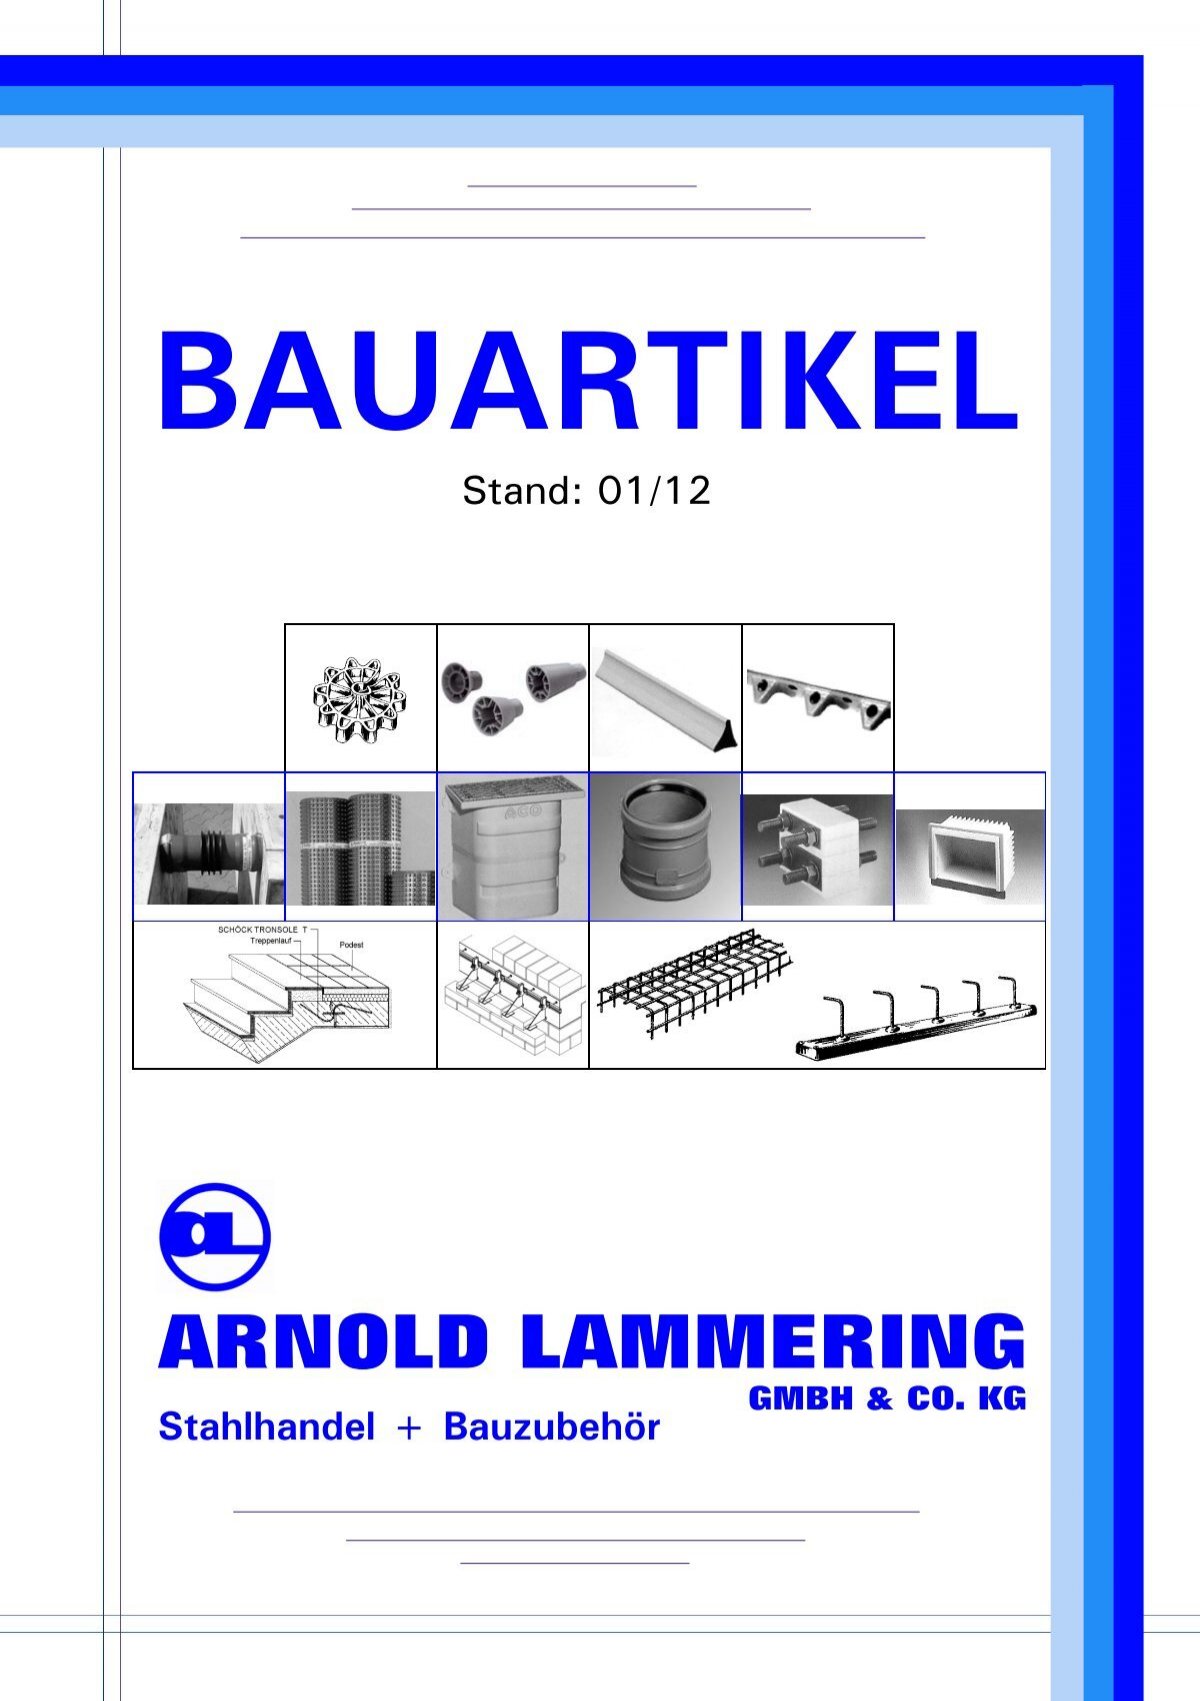 Bauartikel-Liste 2012 - bei der Arnold Lammering GmbH & Co. KG